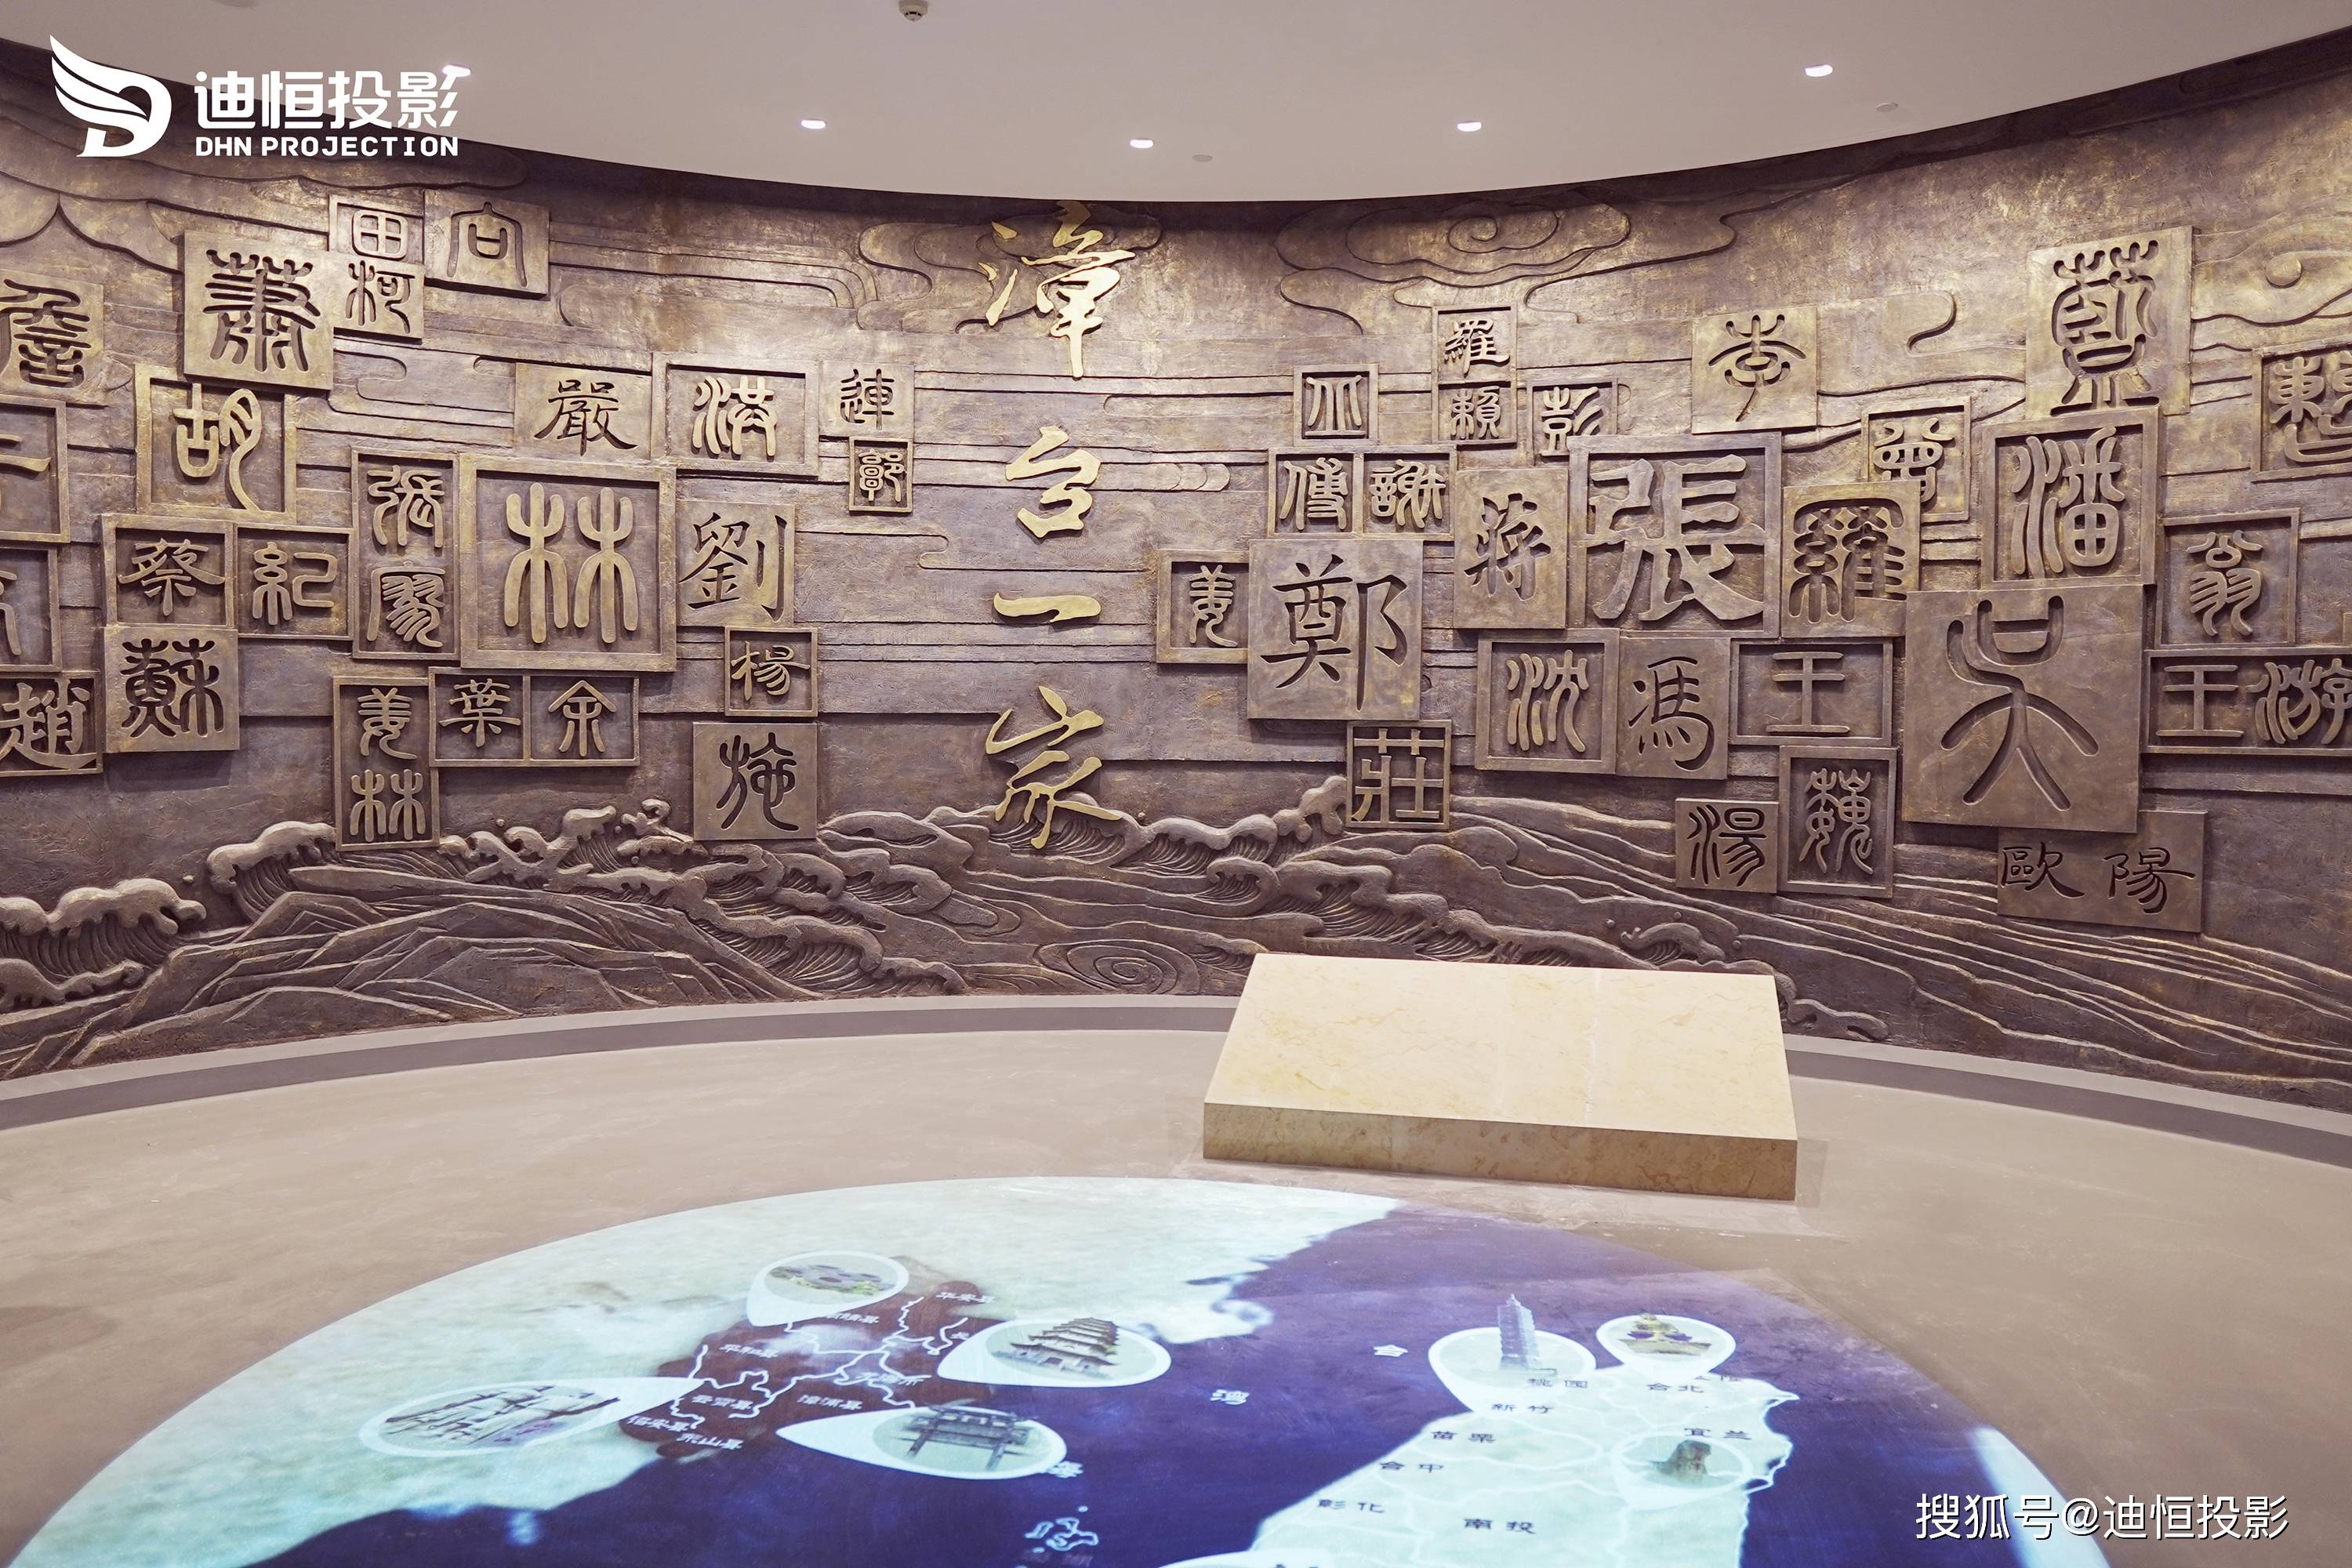 迪恒投影:漳州博物馆 | 穿梭光影,来看一场关于历史的梦_文化